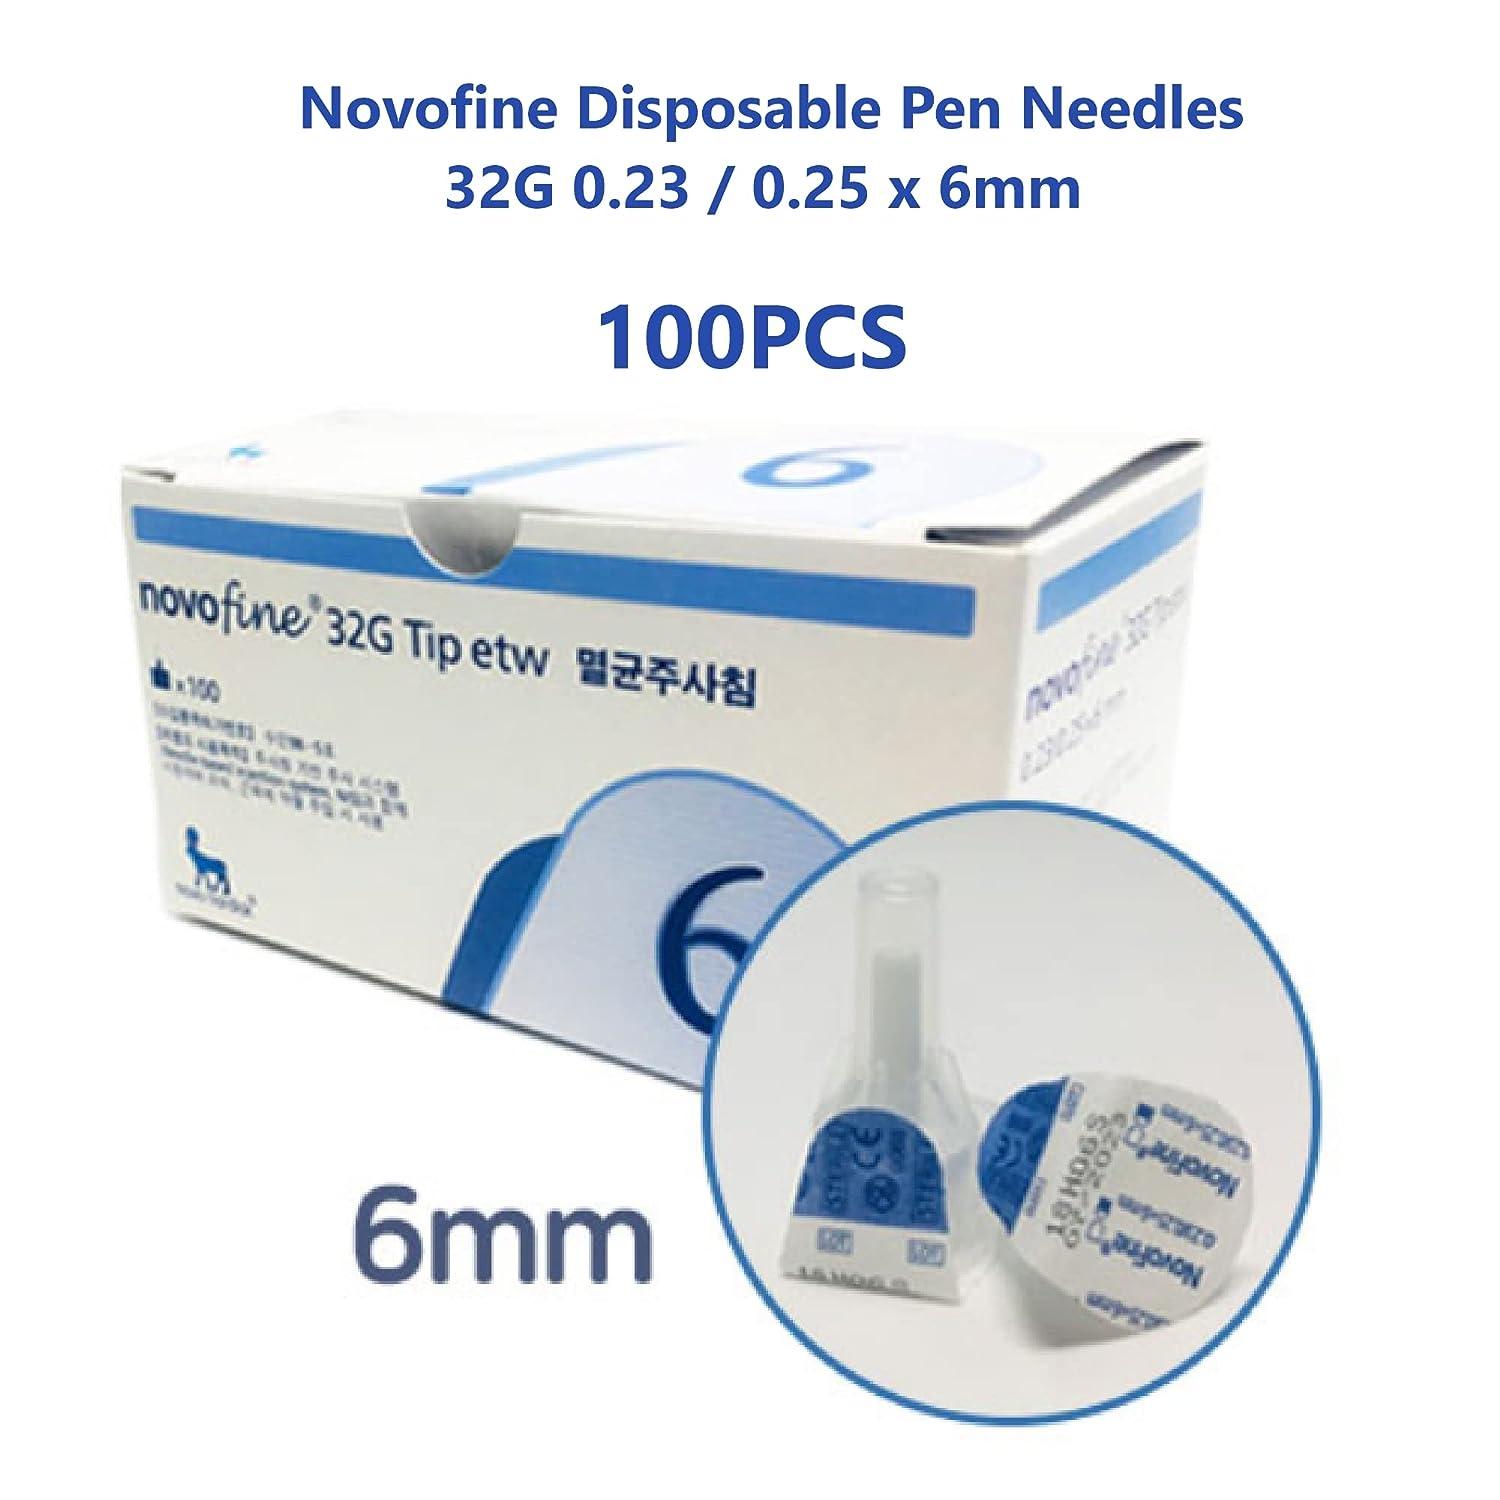 novofine 32G 6mm insulin needles, Everything Else on Carousell